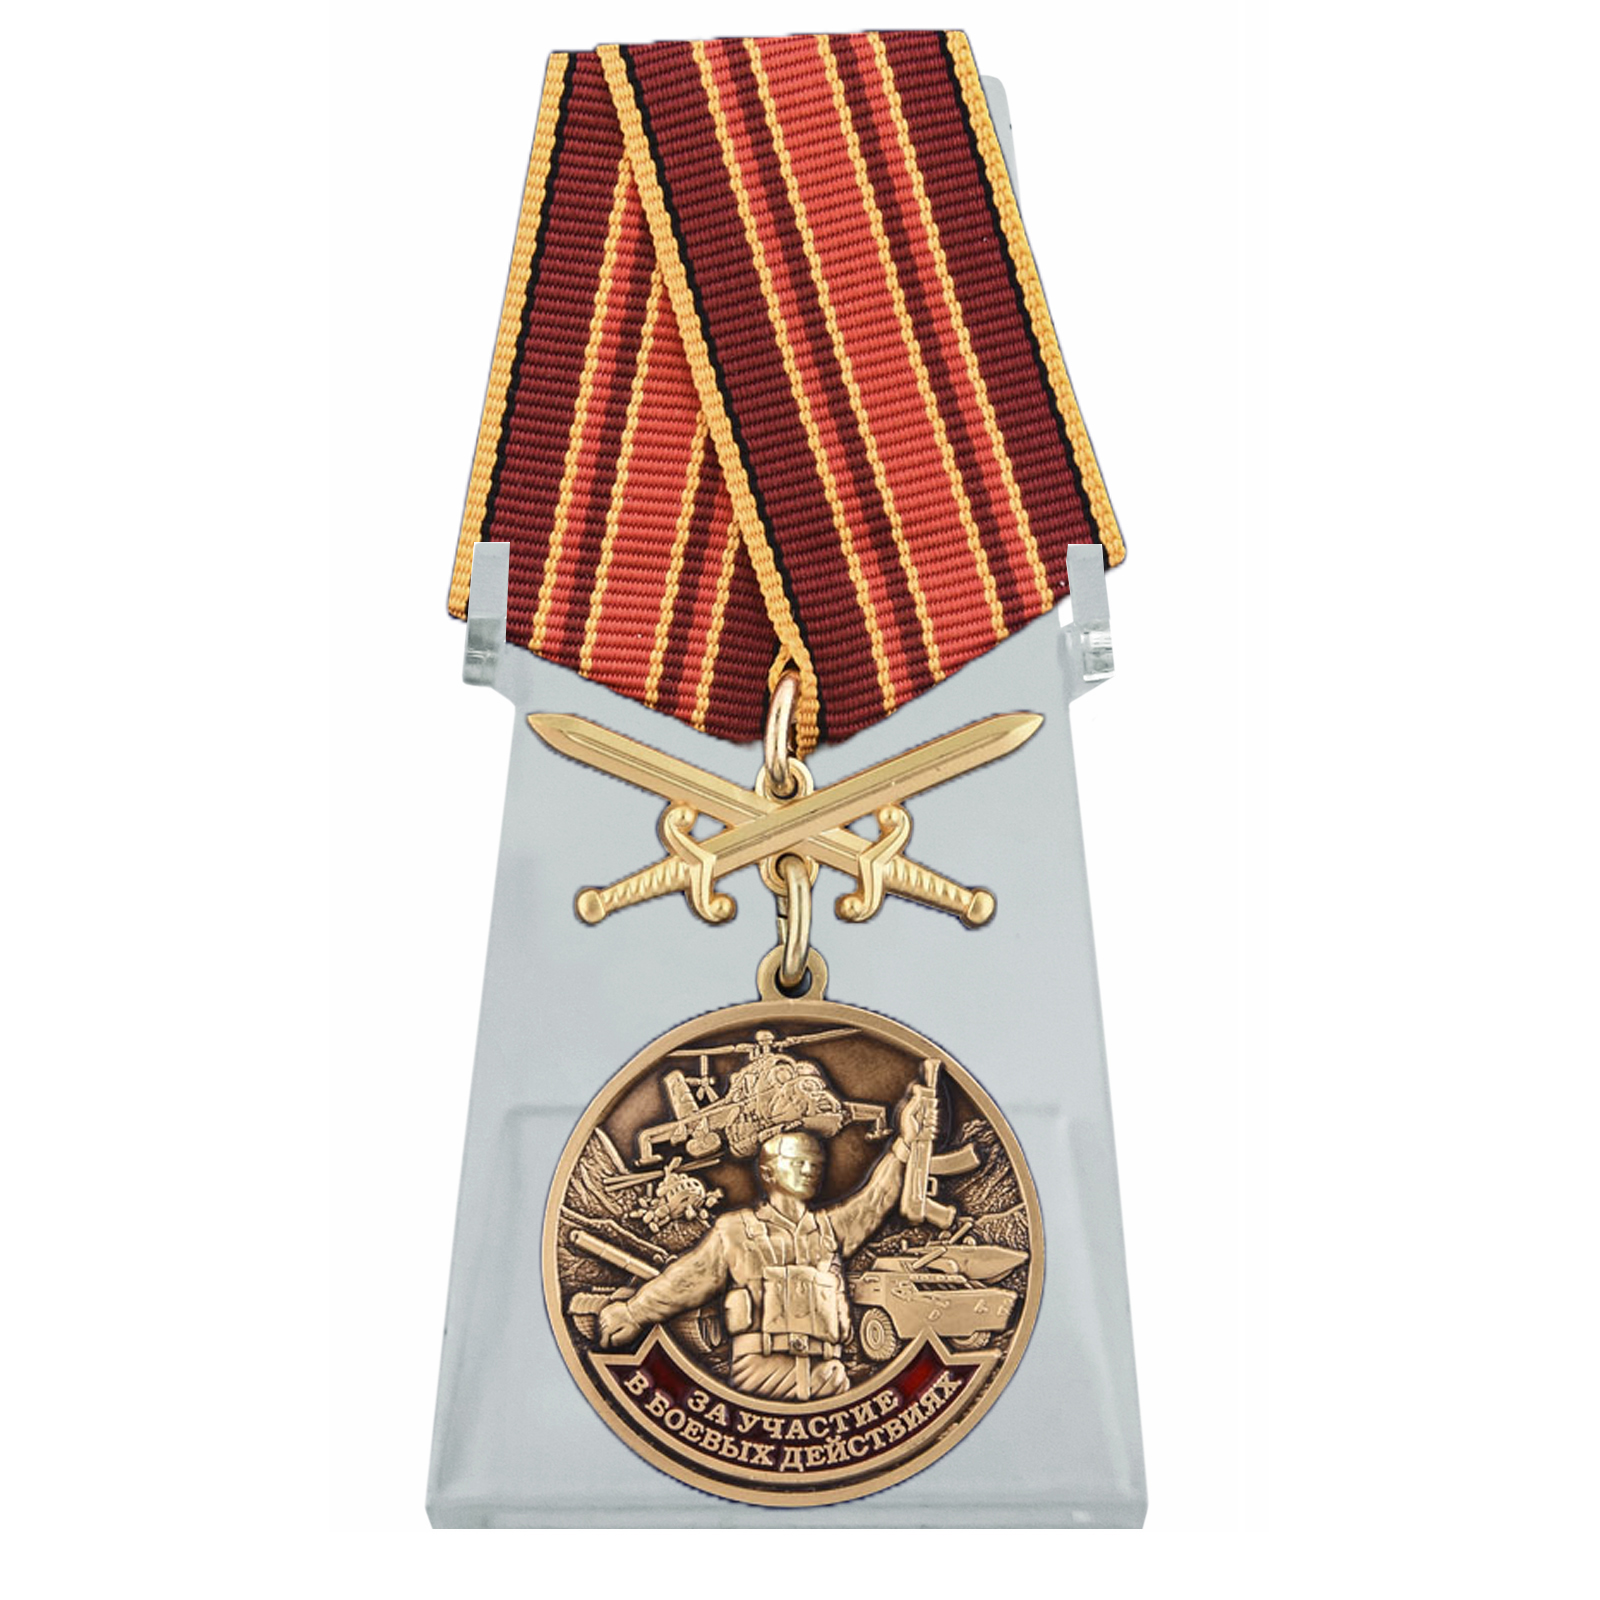 Купить медаль За участие в боевых действиях на подставке выгодно